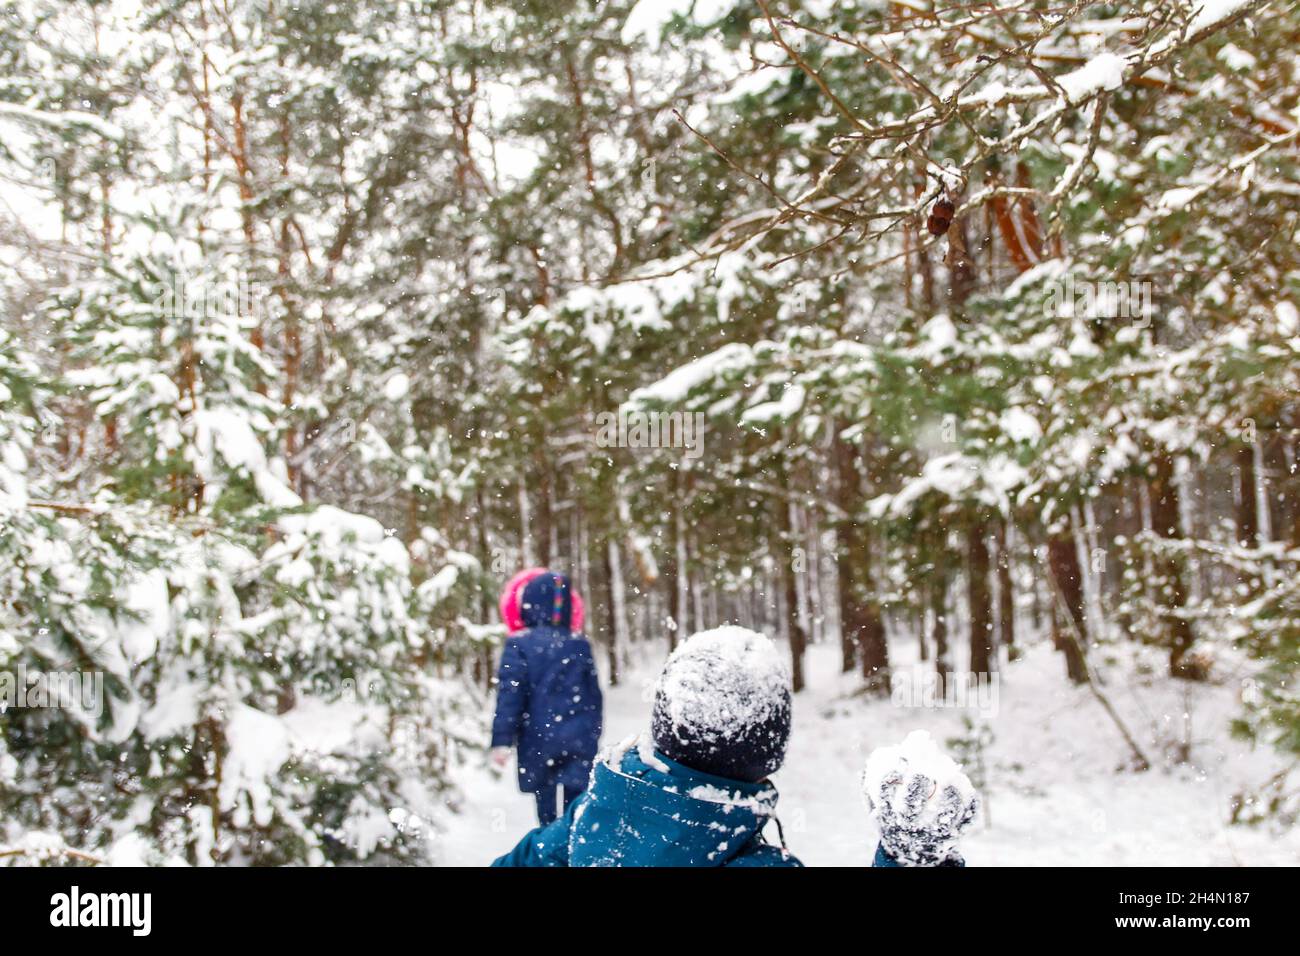 Der Junge wirft einen Schneeball auf das Mädchen. Lustige Kinder im Winter Park spielen Schneebälle und verbringen aktiv Zeit im Freien. Winter verschneiten Wald. Kalt f Stockfoto